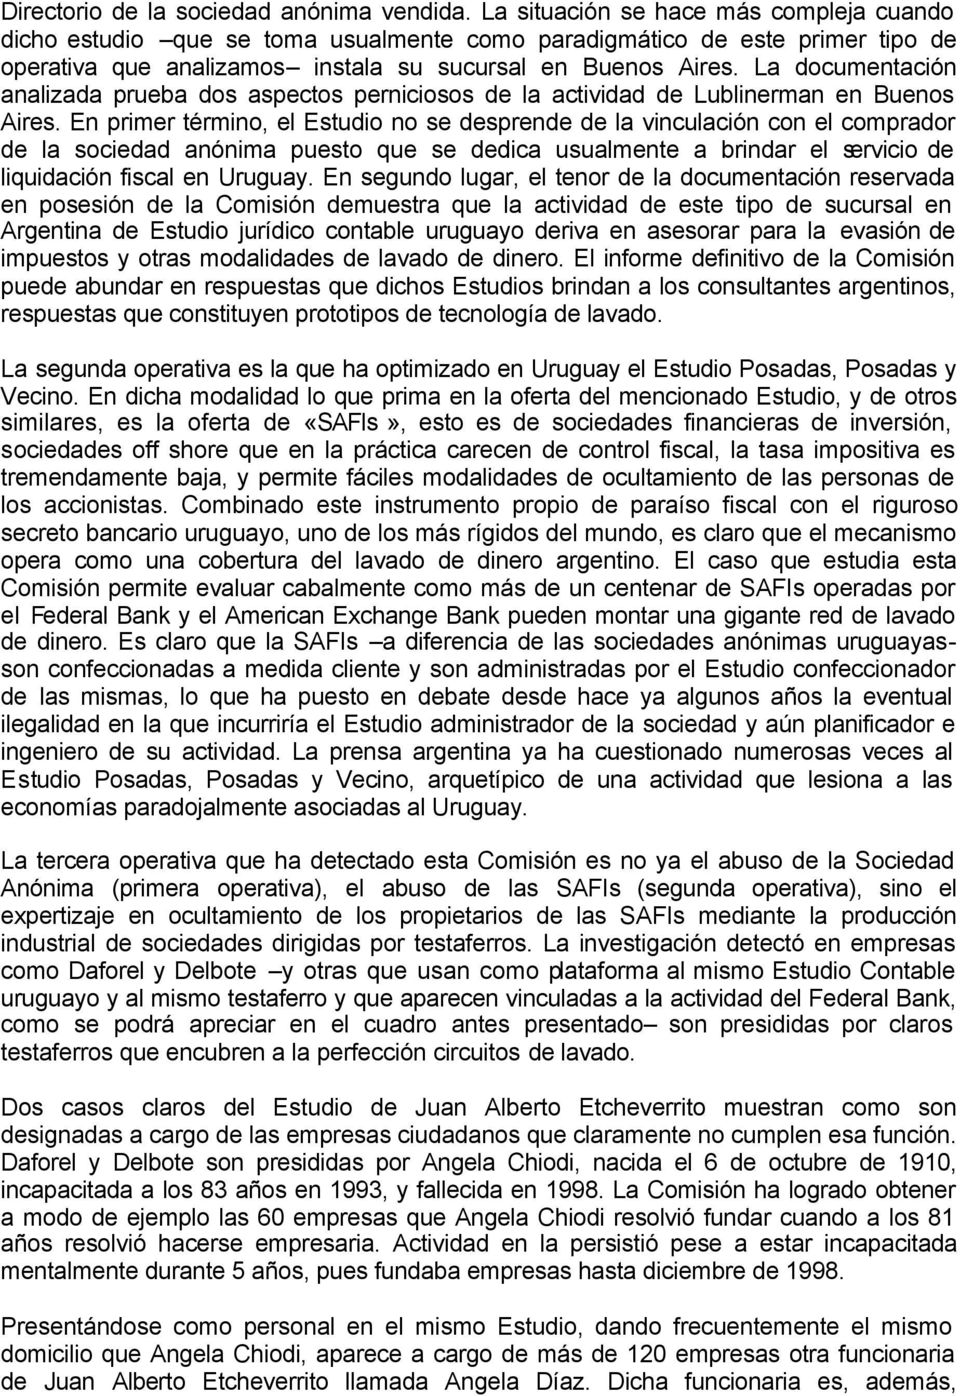 La documentación analizada prueba dos aspectos perniciosos de la actividad de Lublinerman en Buenos Aires.